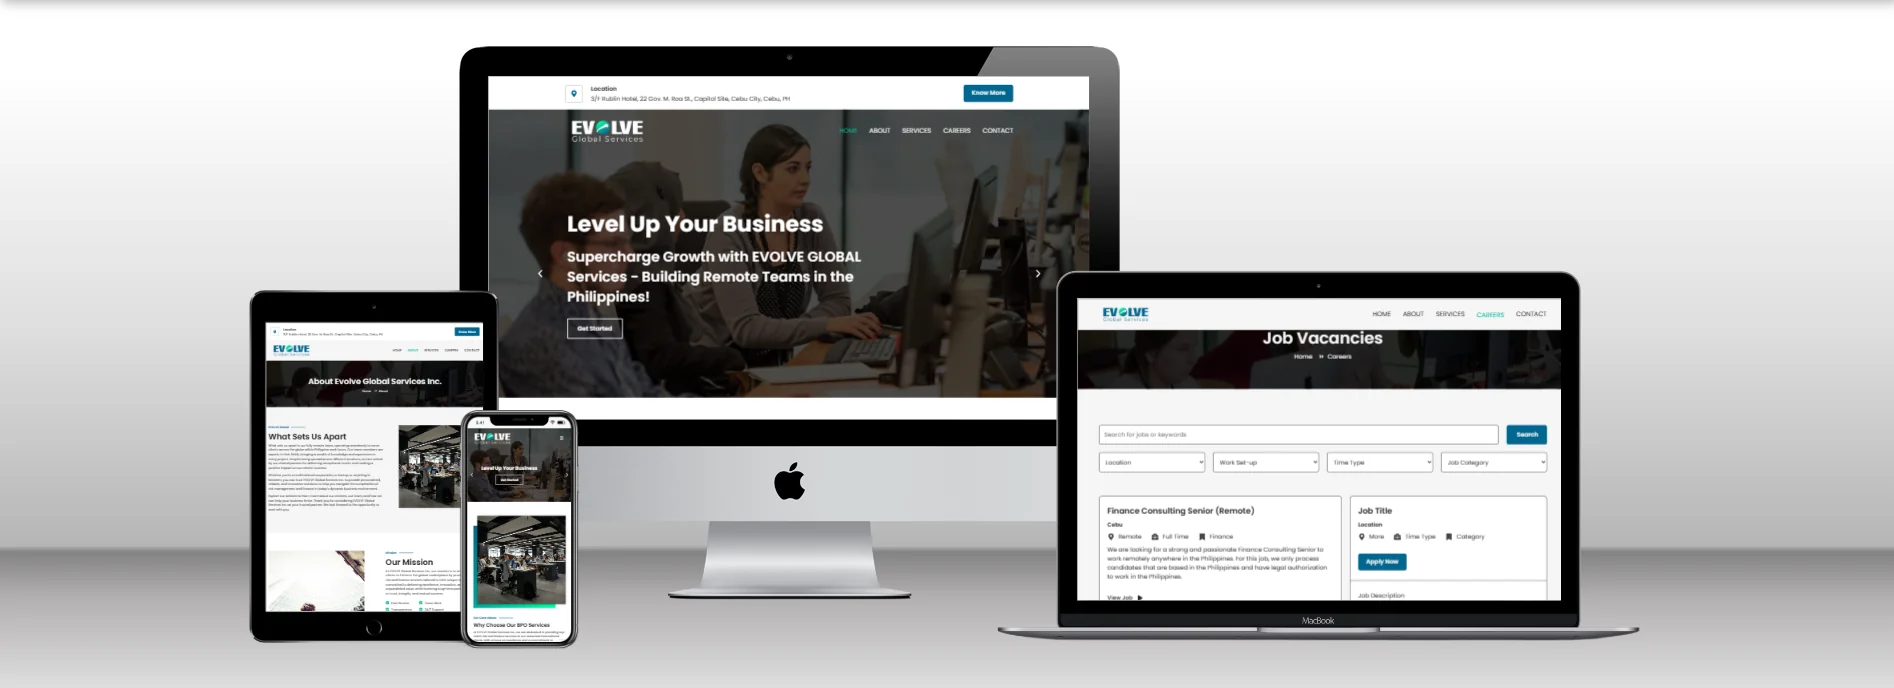 Website - Evolve Global Services